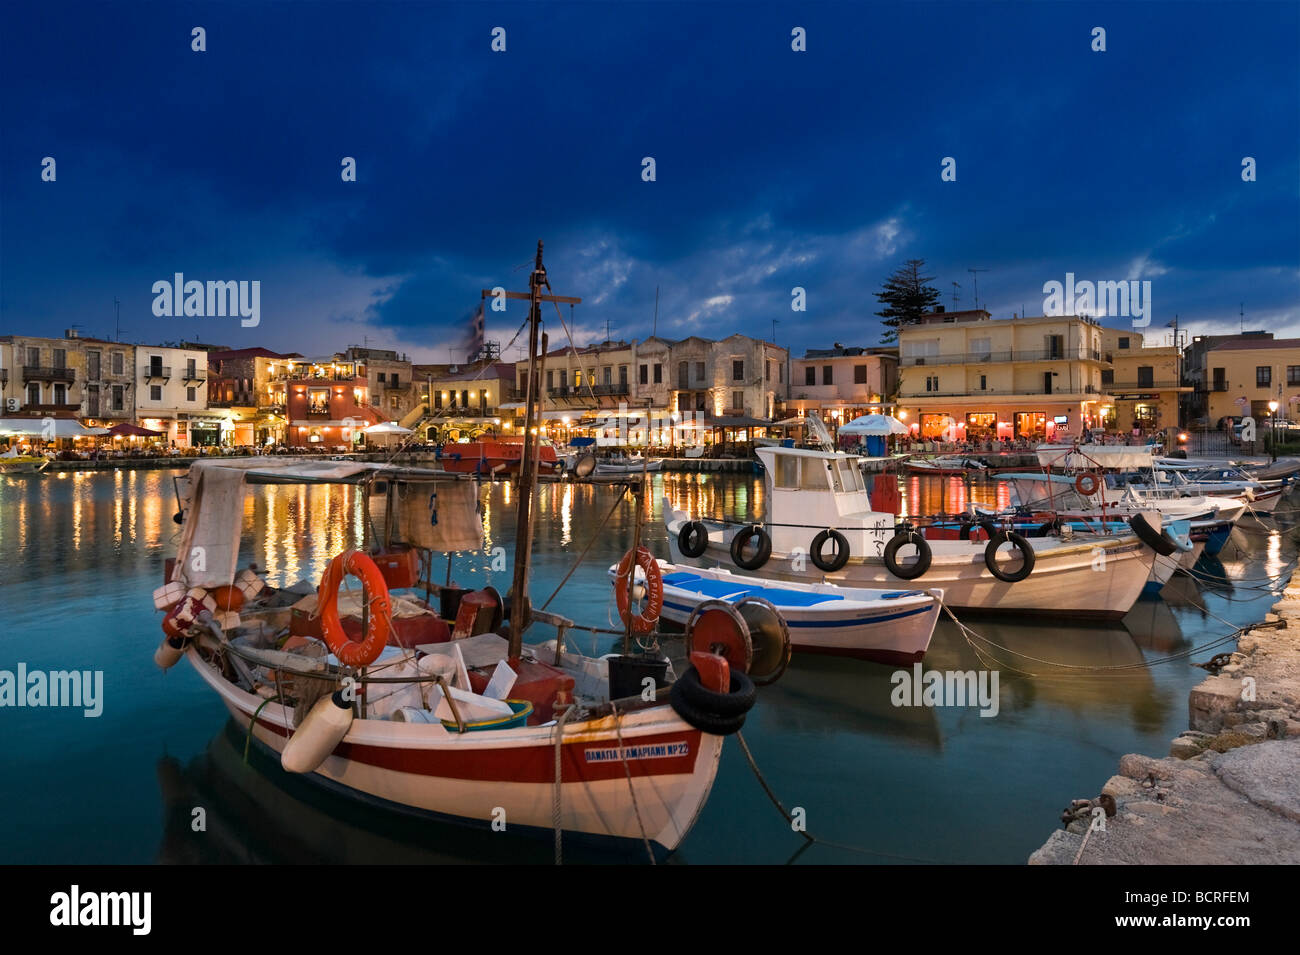 Les bateaux de pêche de nuit dans le vieux port vénitien Rethymnon Crète Grèce Banque D'Images